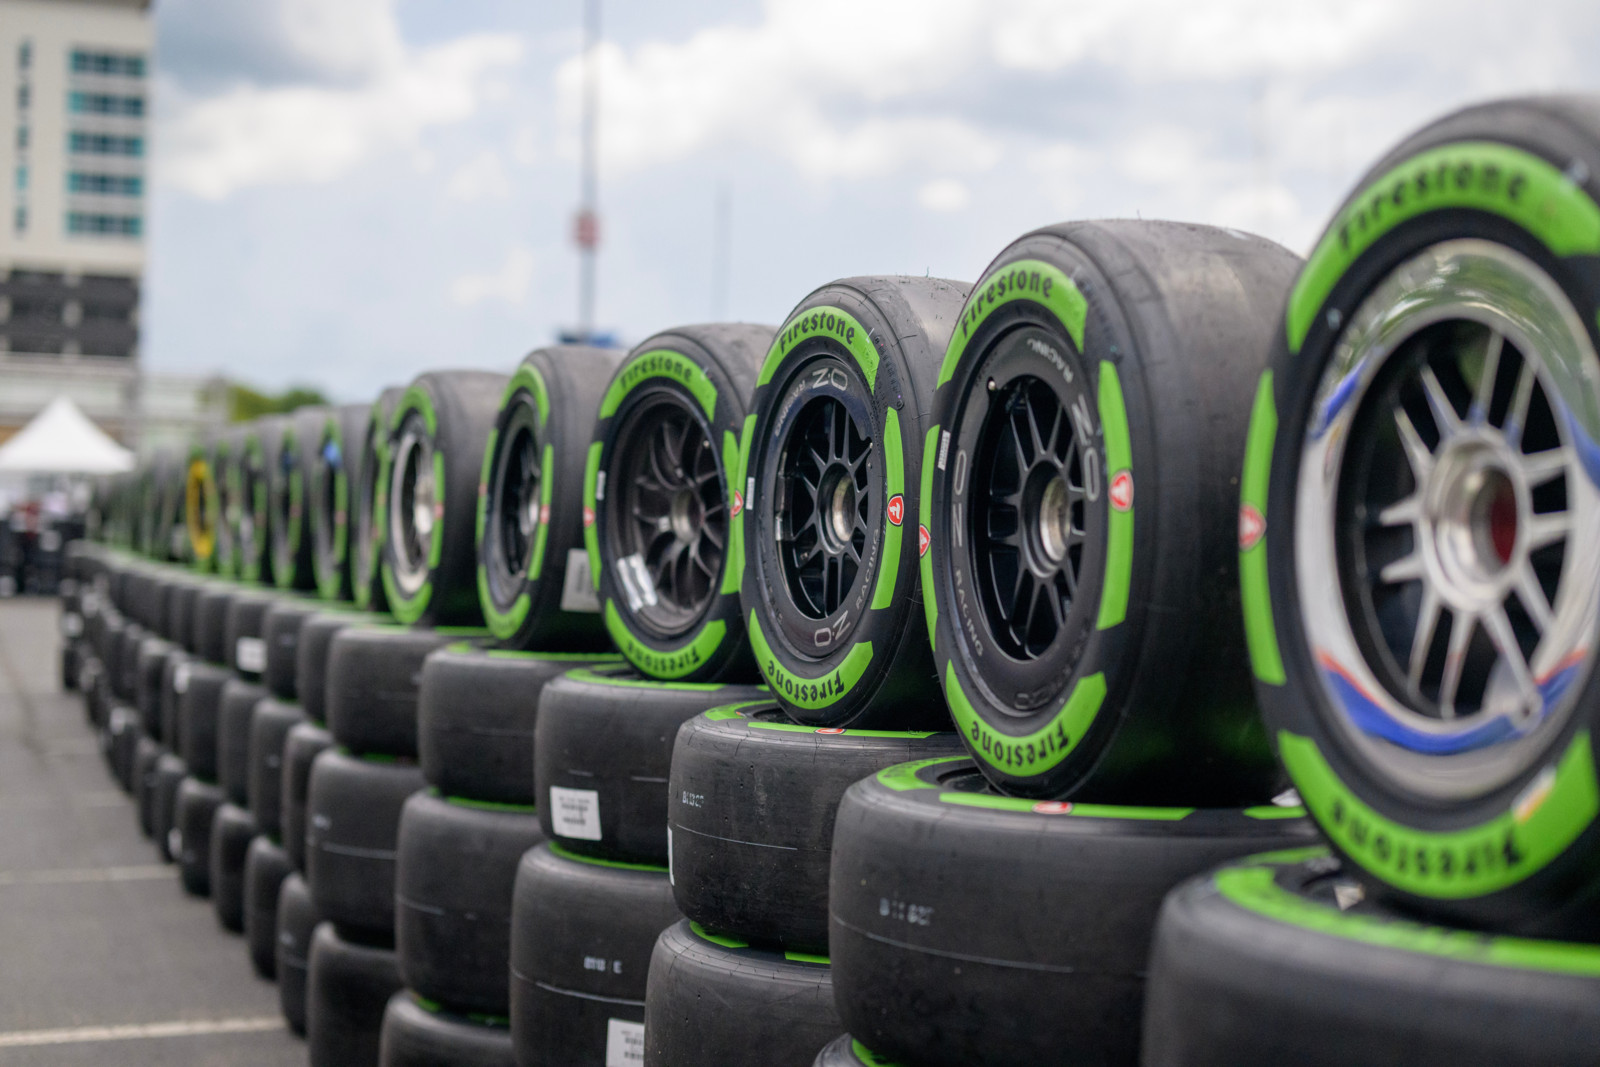 Bei allen fünf Straßenrennen der Indicar-Saison 2023 wurden Guayule-Reifen von Firestone verwendet.